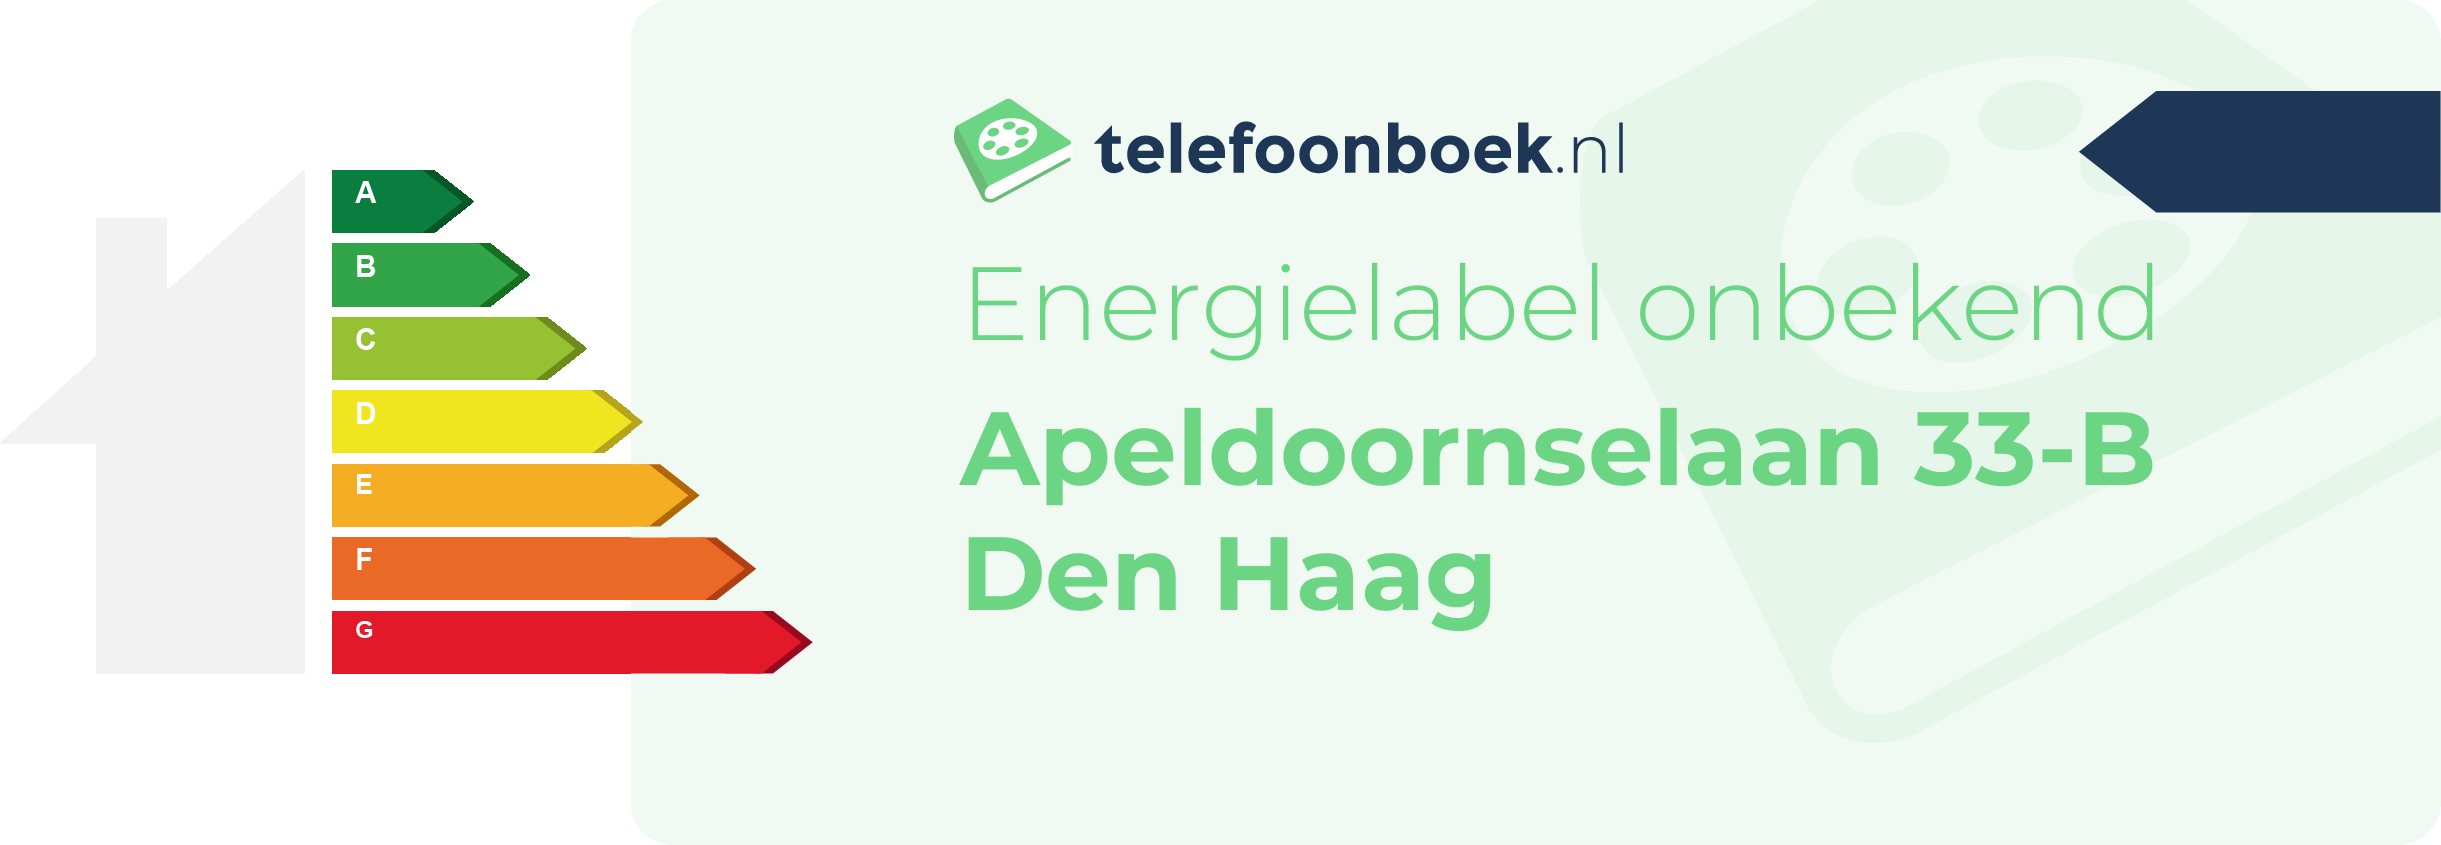 Energielabel Apeldoornselaan 33-B Den Haag